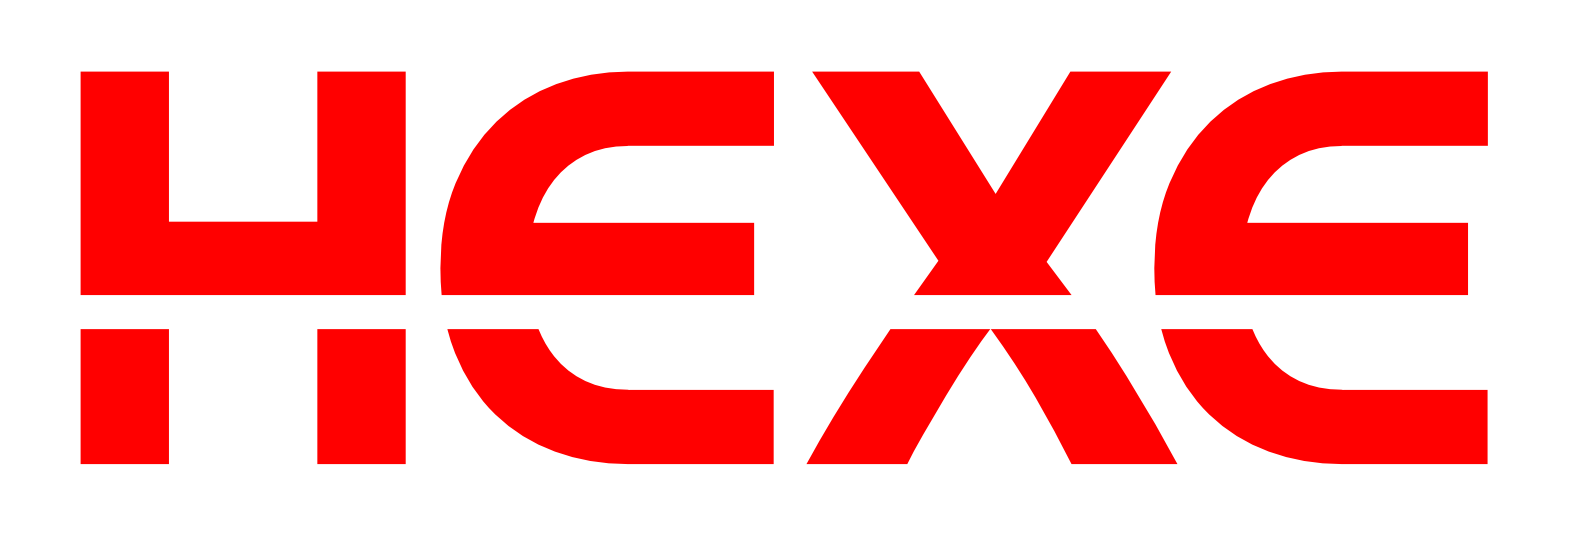 HEXE-Logo-framed